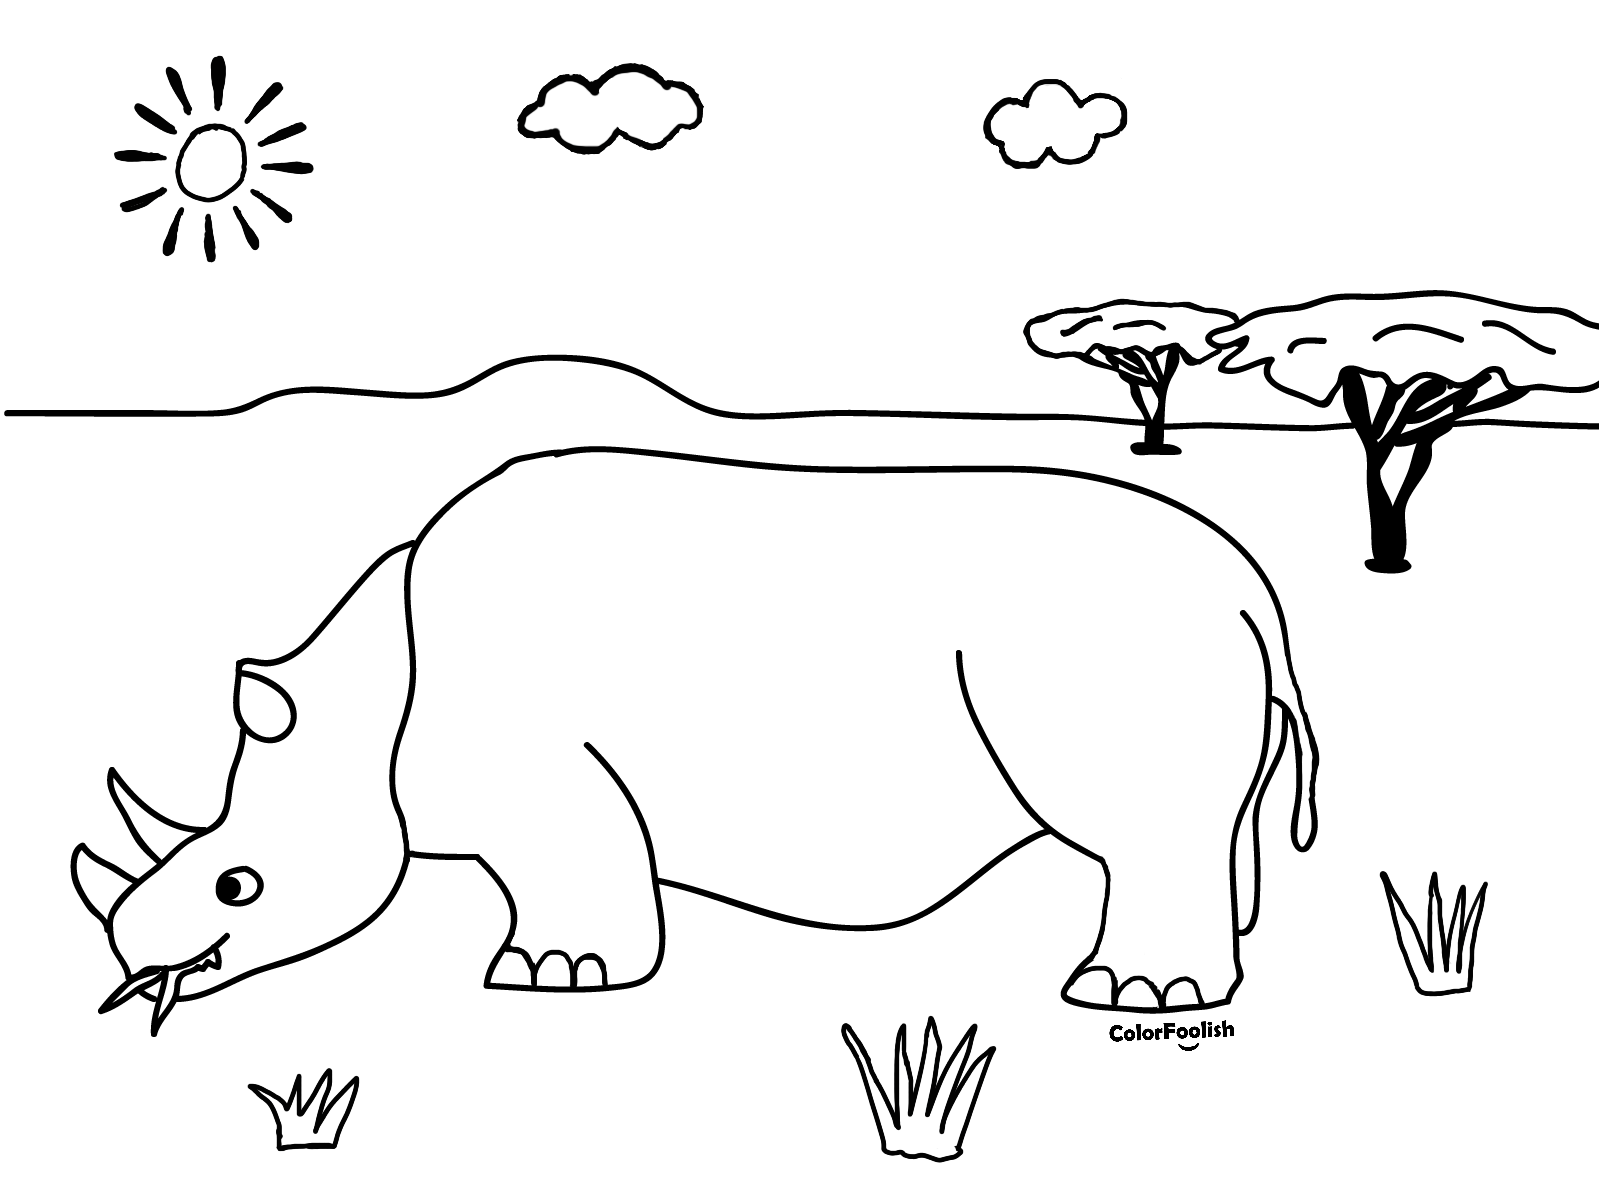 Dibujo para colorear de un rinoceronte comiendo en la sabana